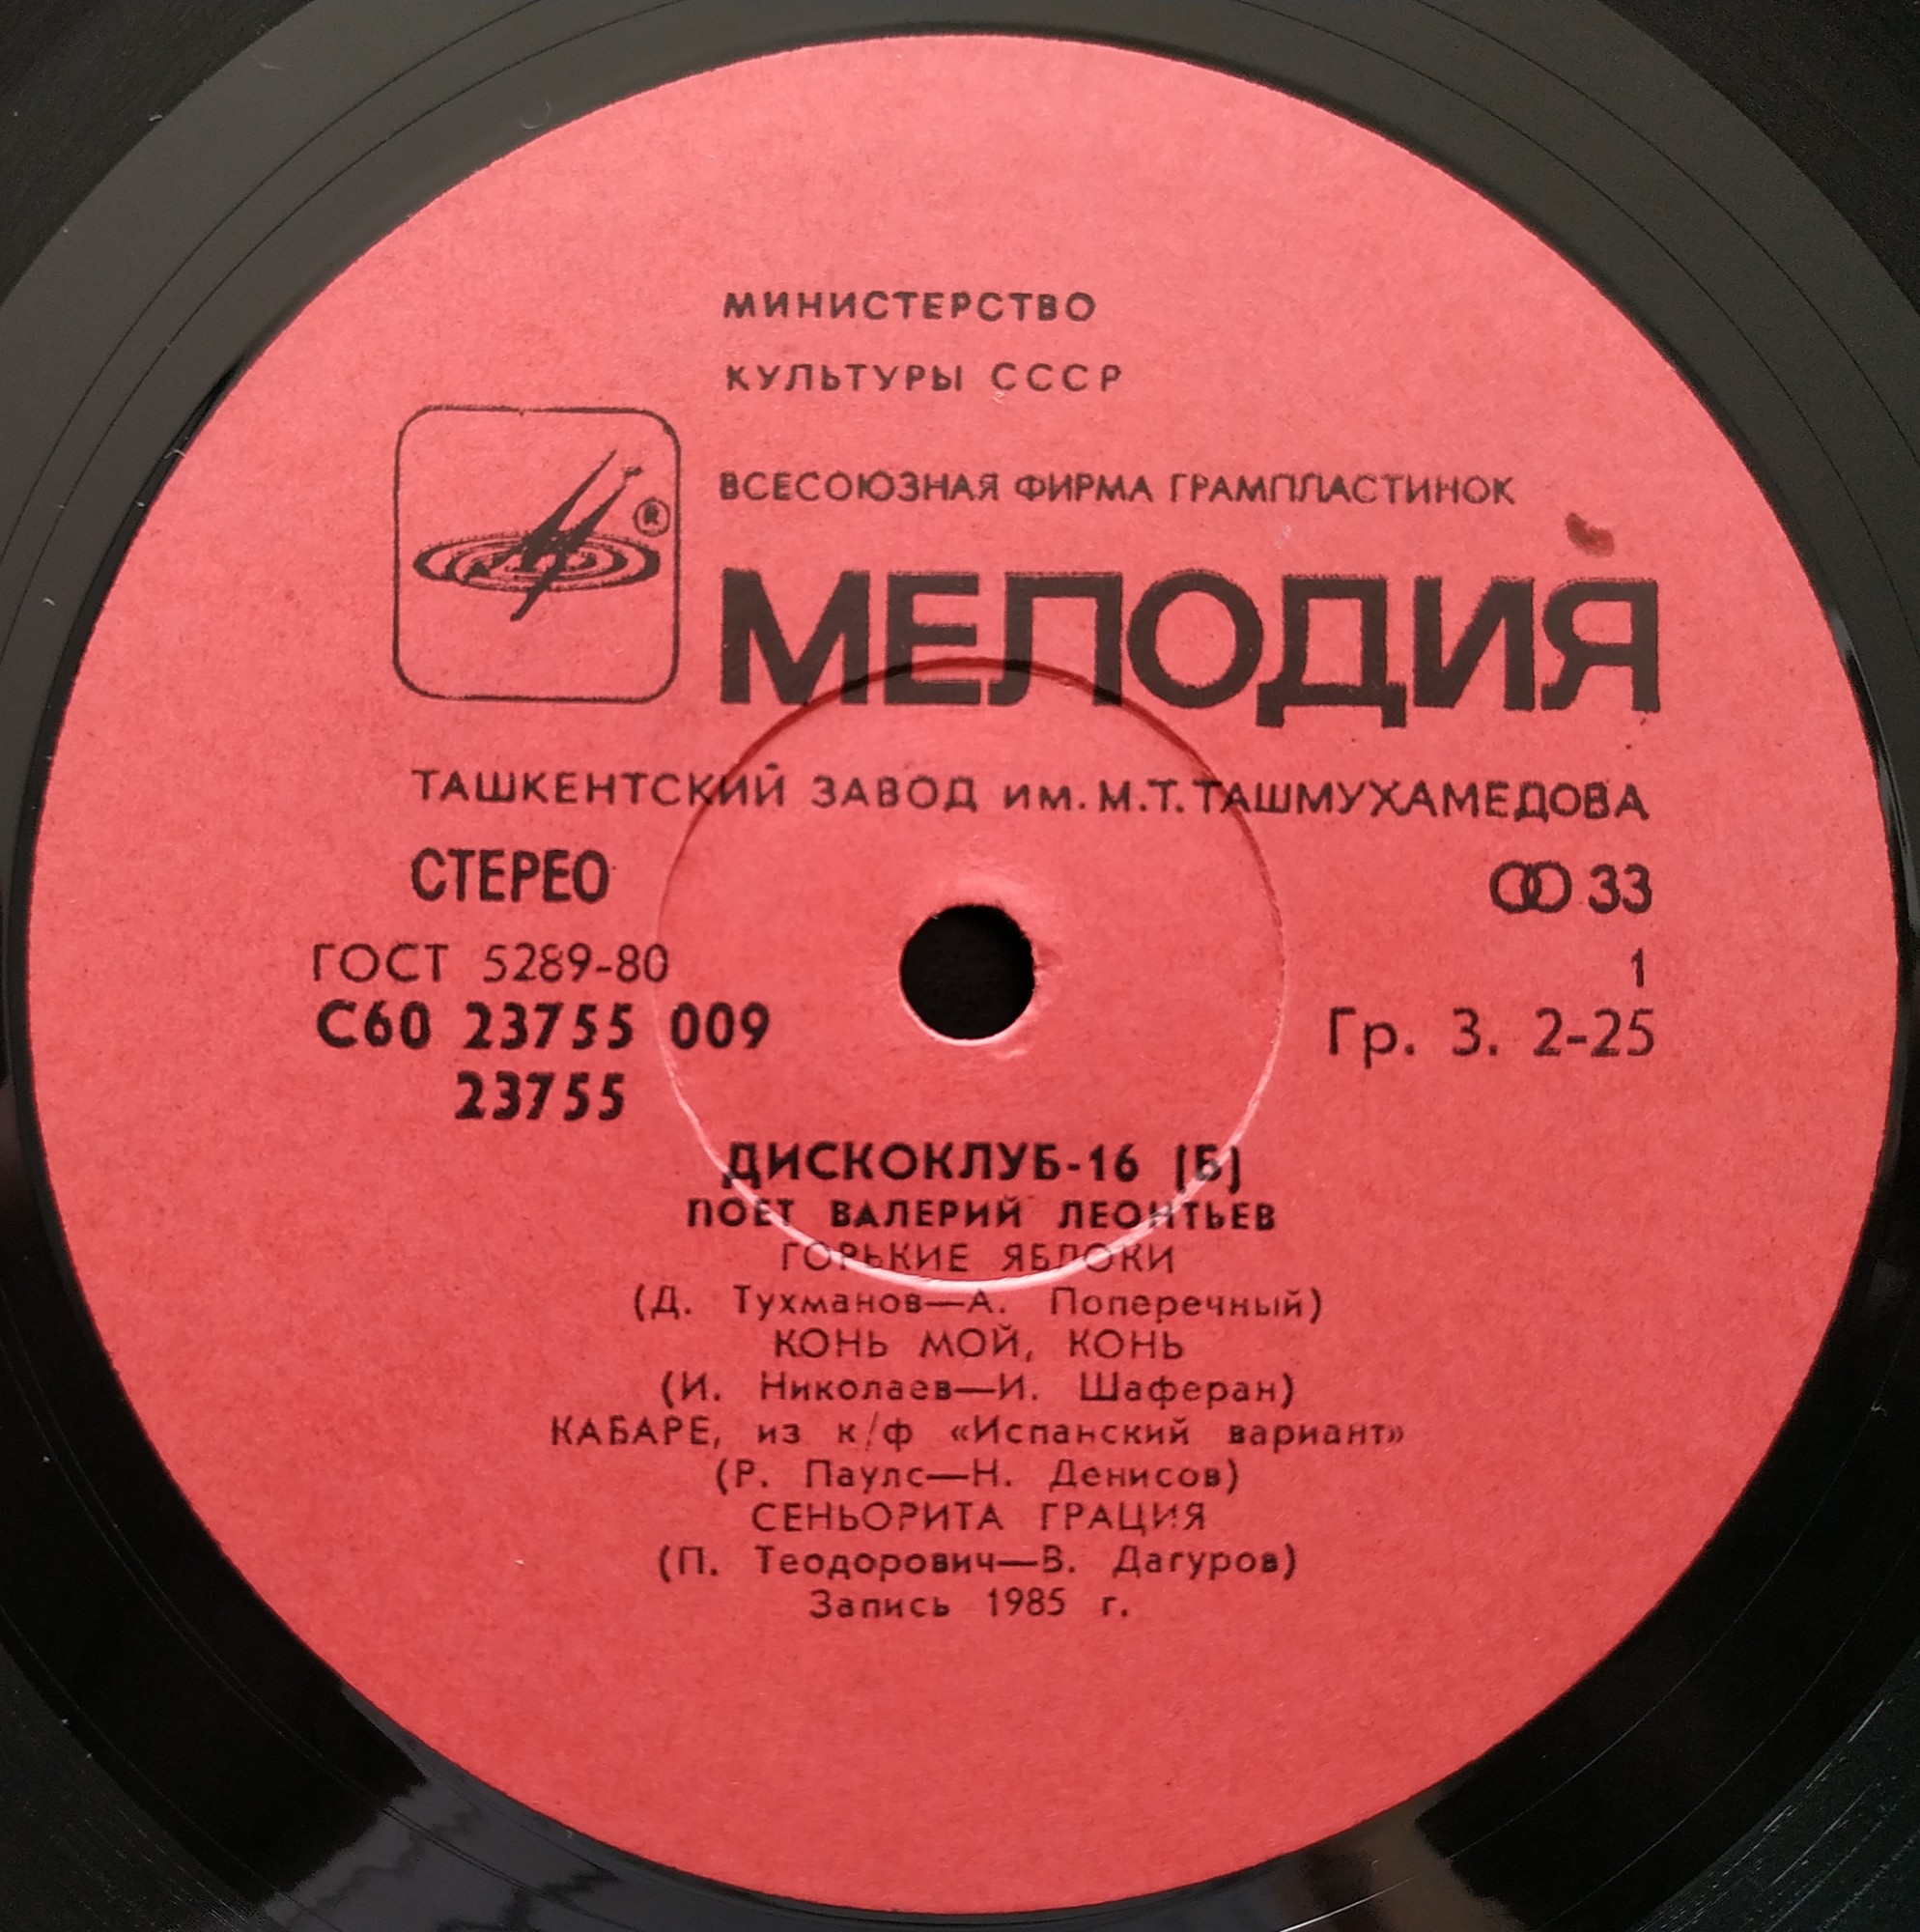 Дискоклуб-16 (Б). Поет Валерий ЛЕОНТЬЕВ